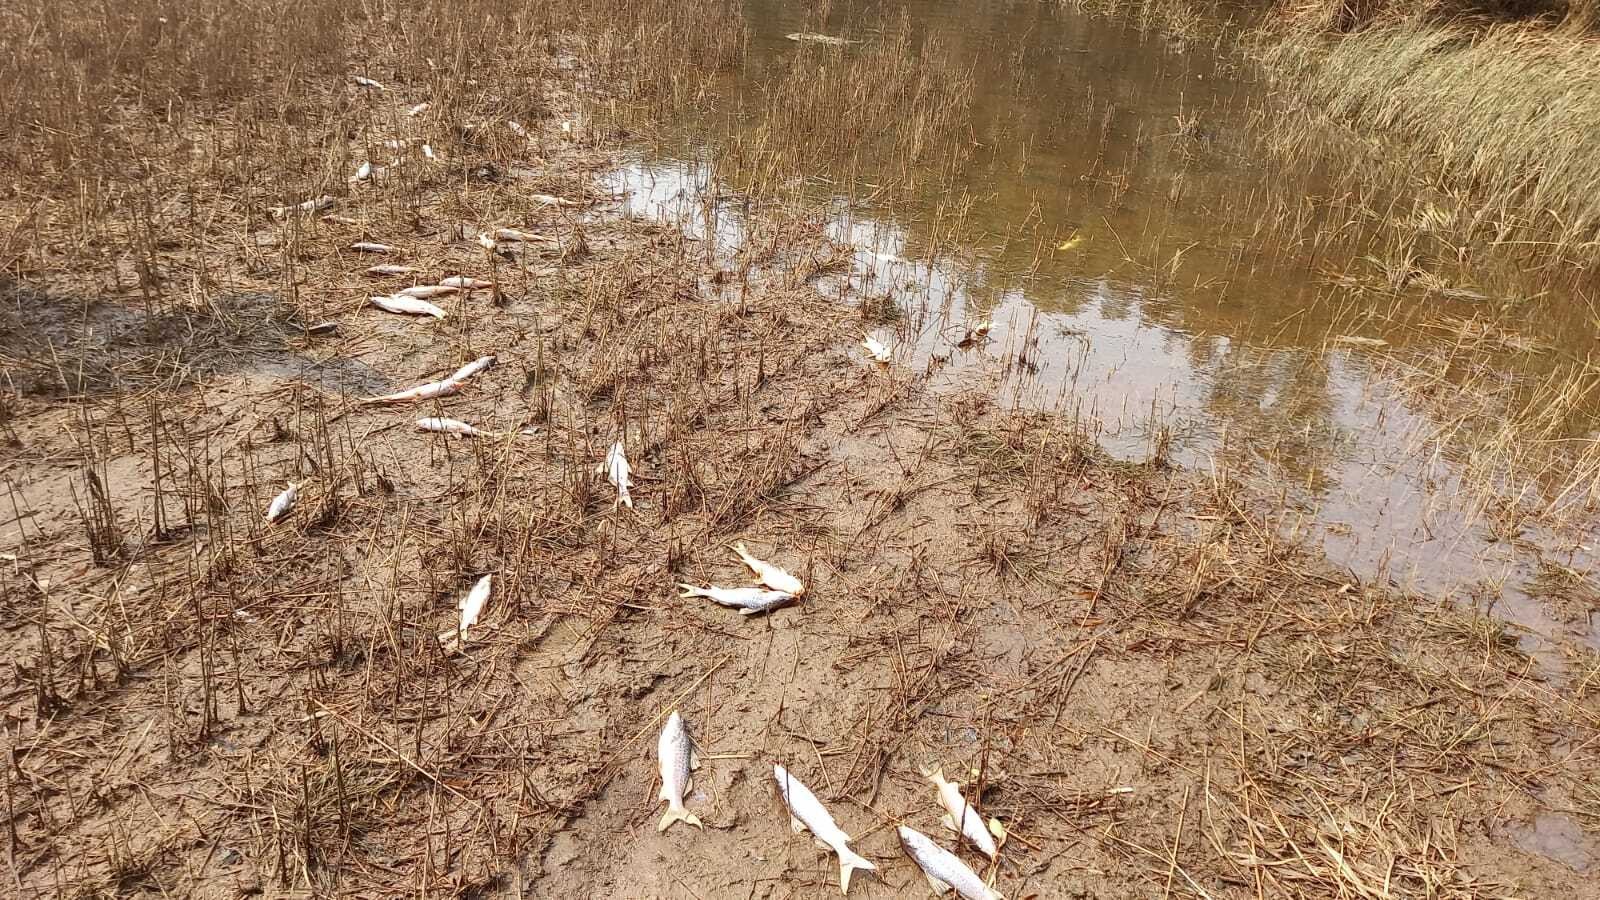 VÍDEO: Água de enchente seca deixando dezenas de peixes mortos à vista em distrito rural que teve cemitério alagado